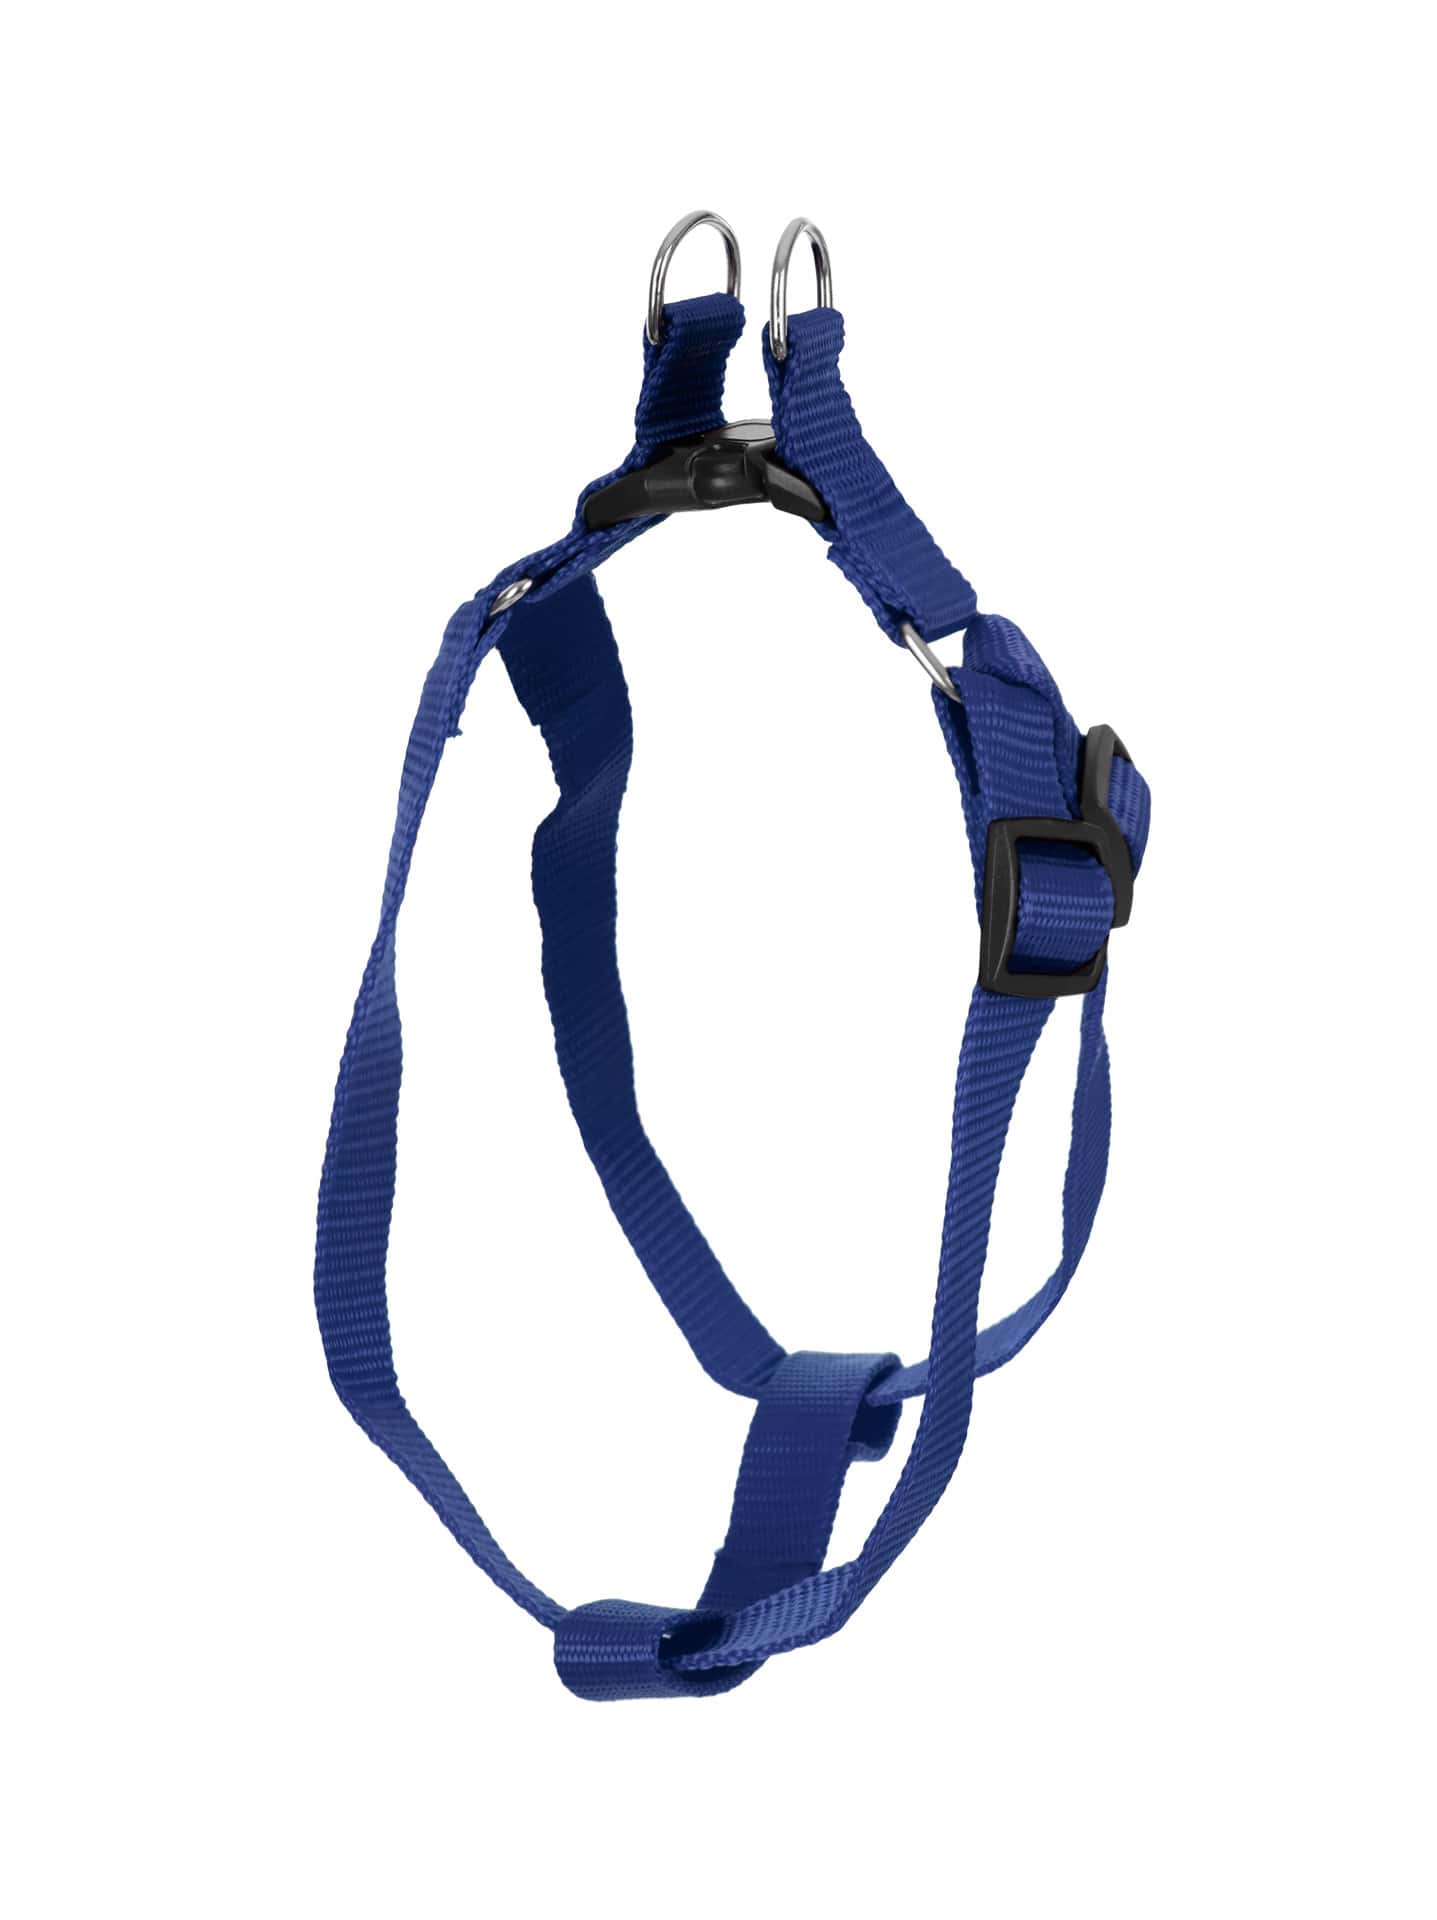 Blue Adjustable Dog Harness 